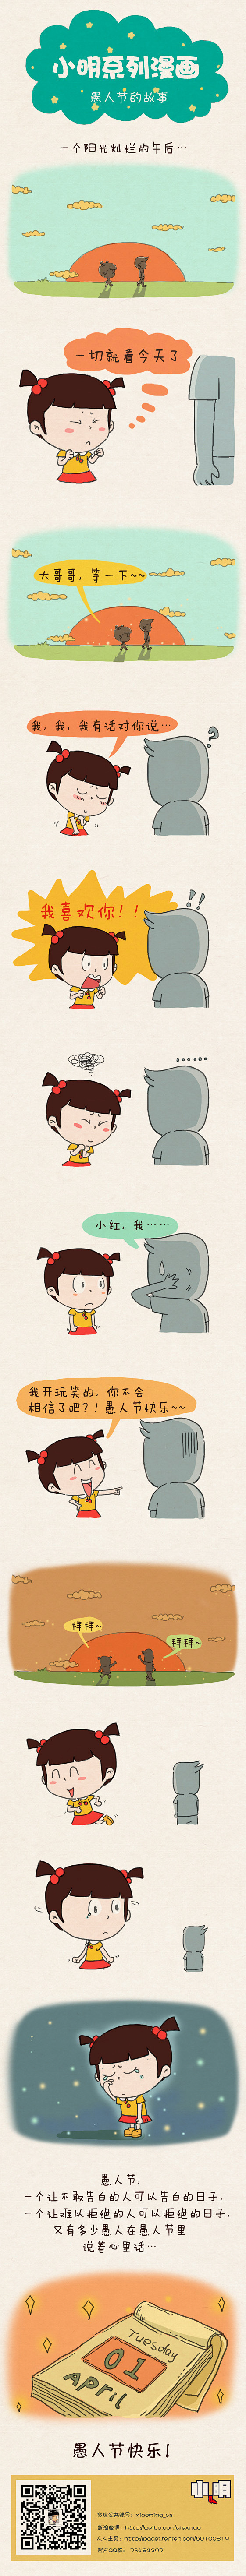 小明系列漫画——愚人节的故事：这是个真实...